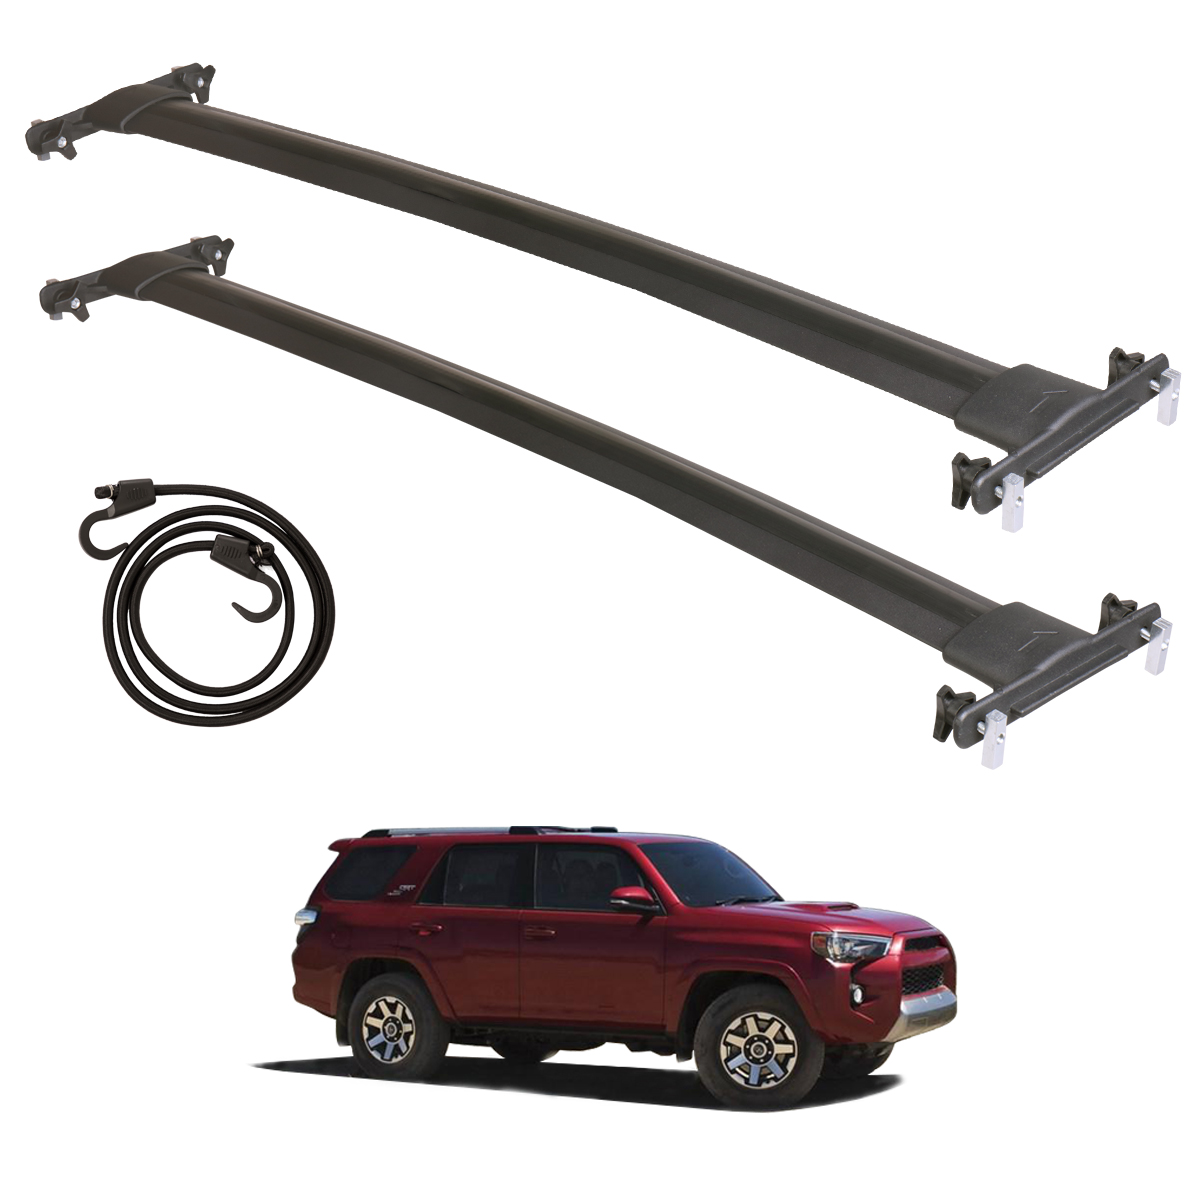 Crossbars Roof Rack Fit for Toyota 4Runner 2010-2021 Aluminum Luggage Carrier | eBay 2013 Toyota 4runner Roof Rack Cross Bars